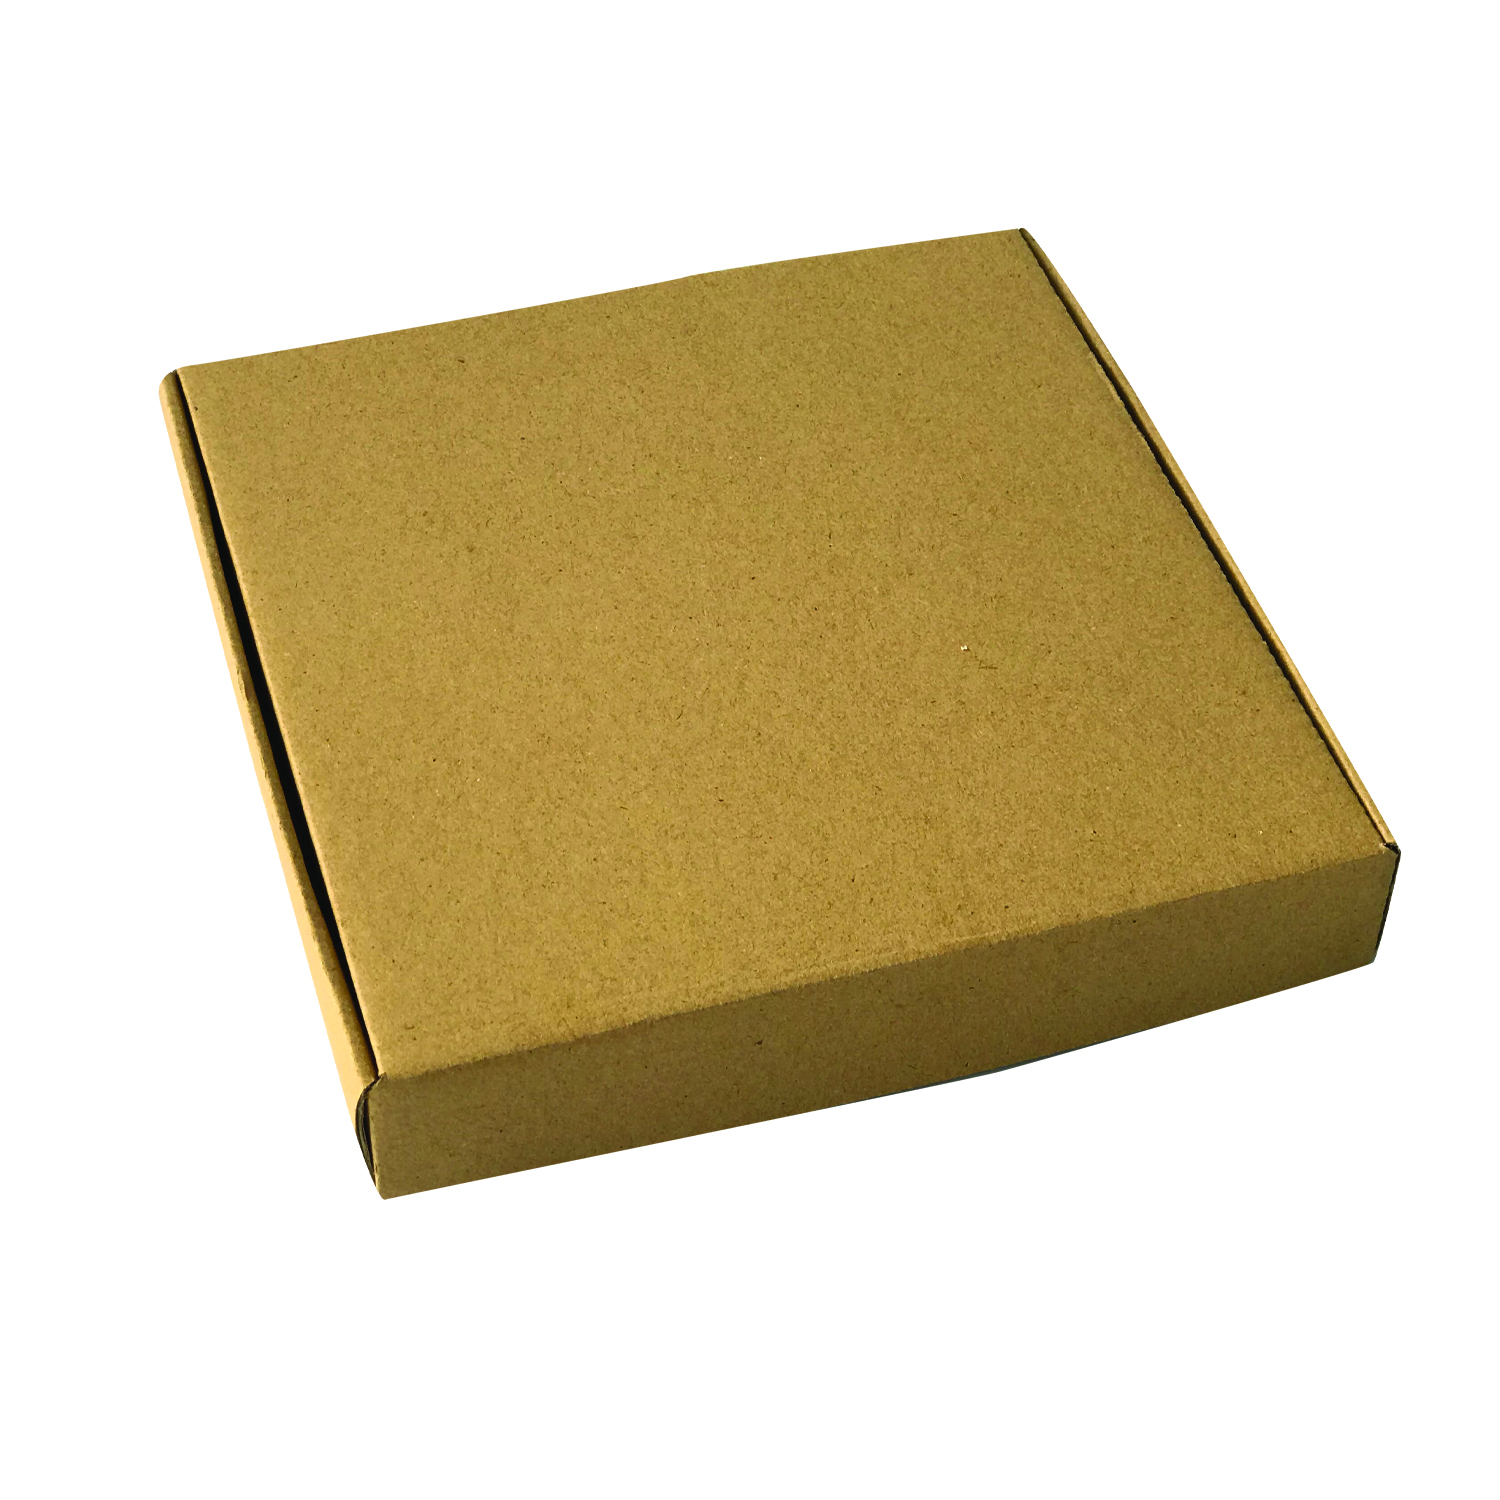 جعبه  بسته بندی مدل k20203 بسته ۱۰ عددی